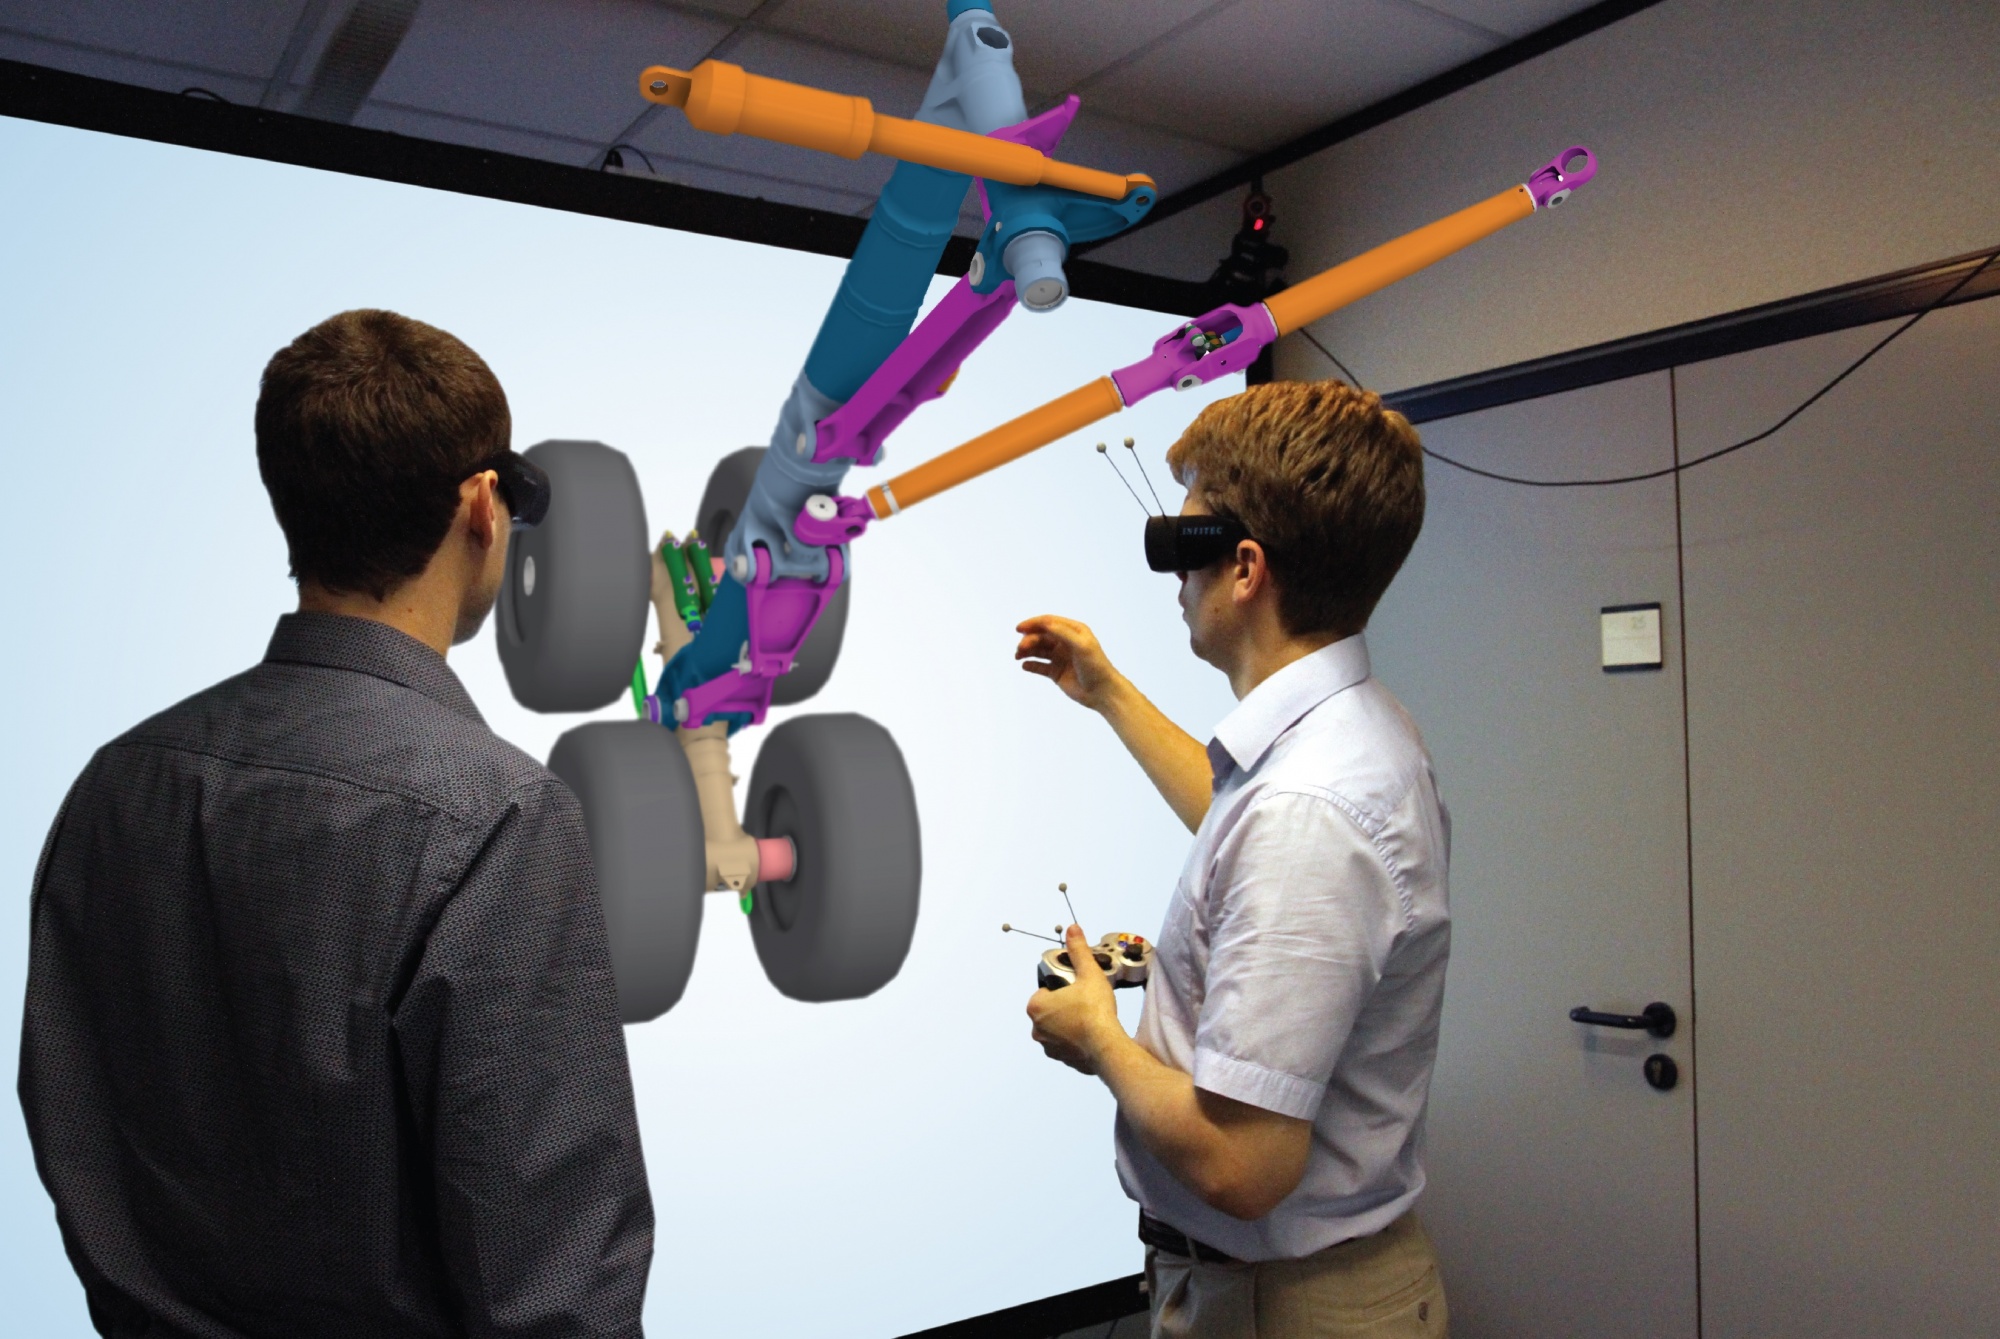 Vr сфера. Интерактивные технологии VR. Проектирование в виртуальной реальности. Технологии дополненной реальности в образовании. Виртуальная реальность в обучении.